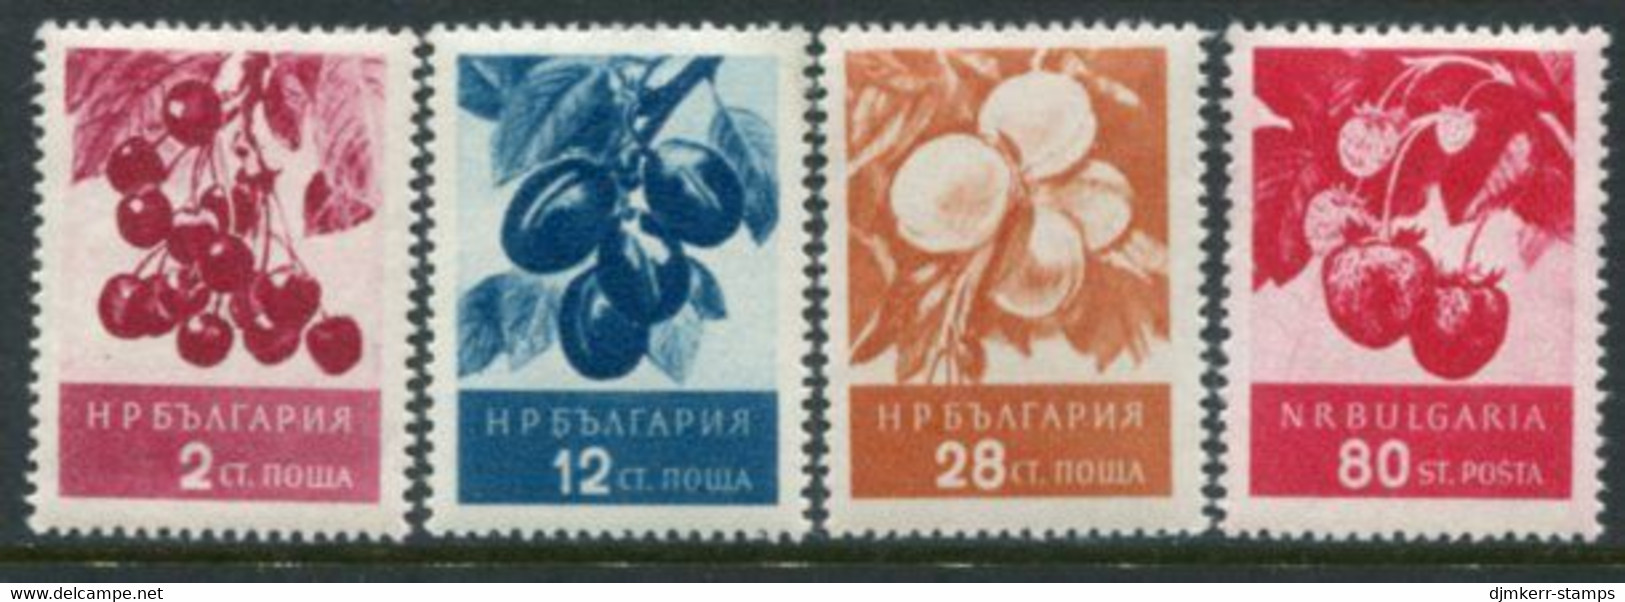 BULGARIA 1956 Fruits II MNH / **.  Michel 990-93 - Neufs